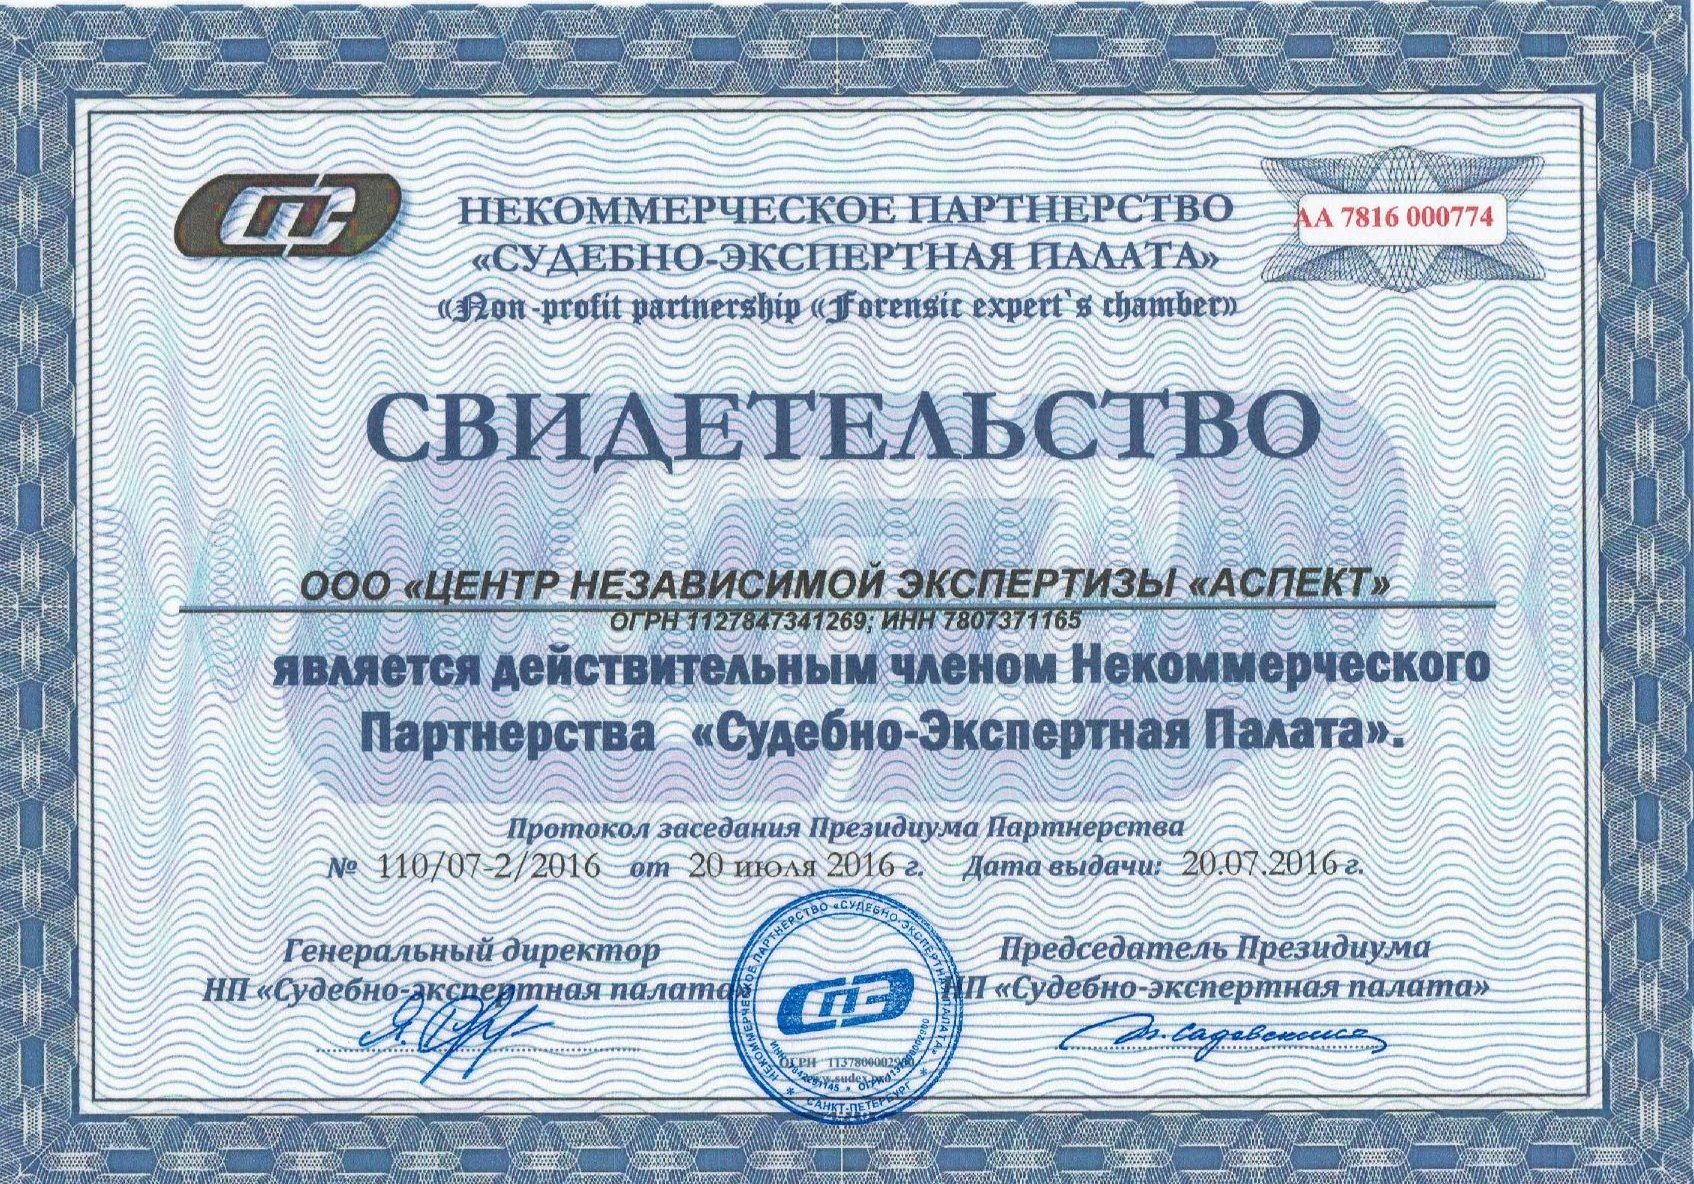 Экспертная палата рф. Центр независимой экспертизы. Сертификат на проведение экспертизы. Дагестанского центра независимой экспертизы. Судебно-экспертная палата.